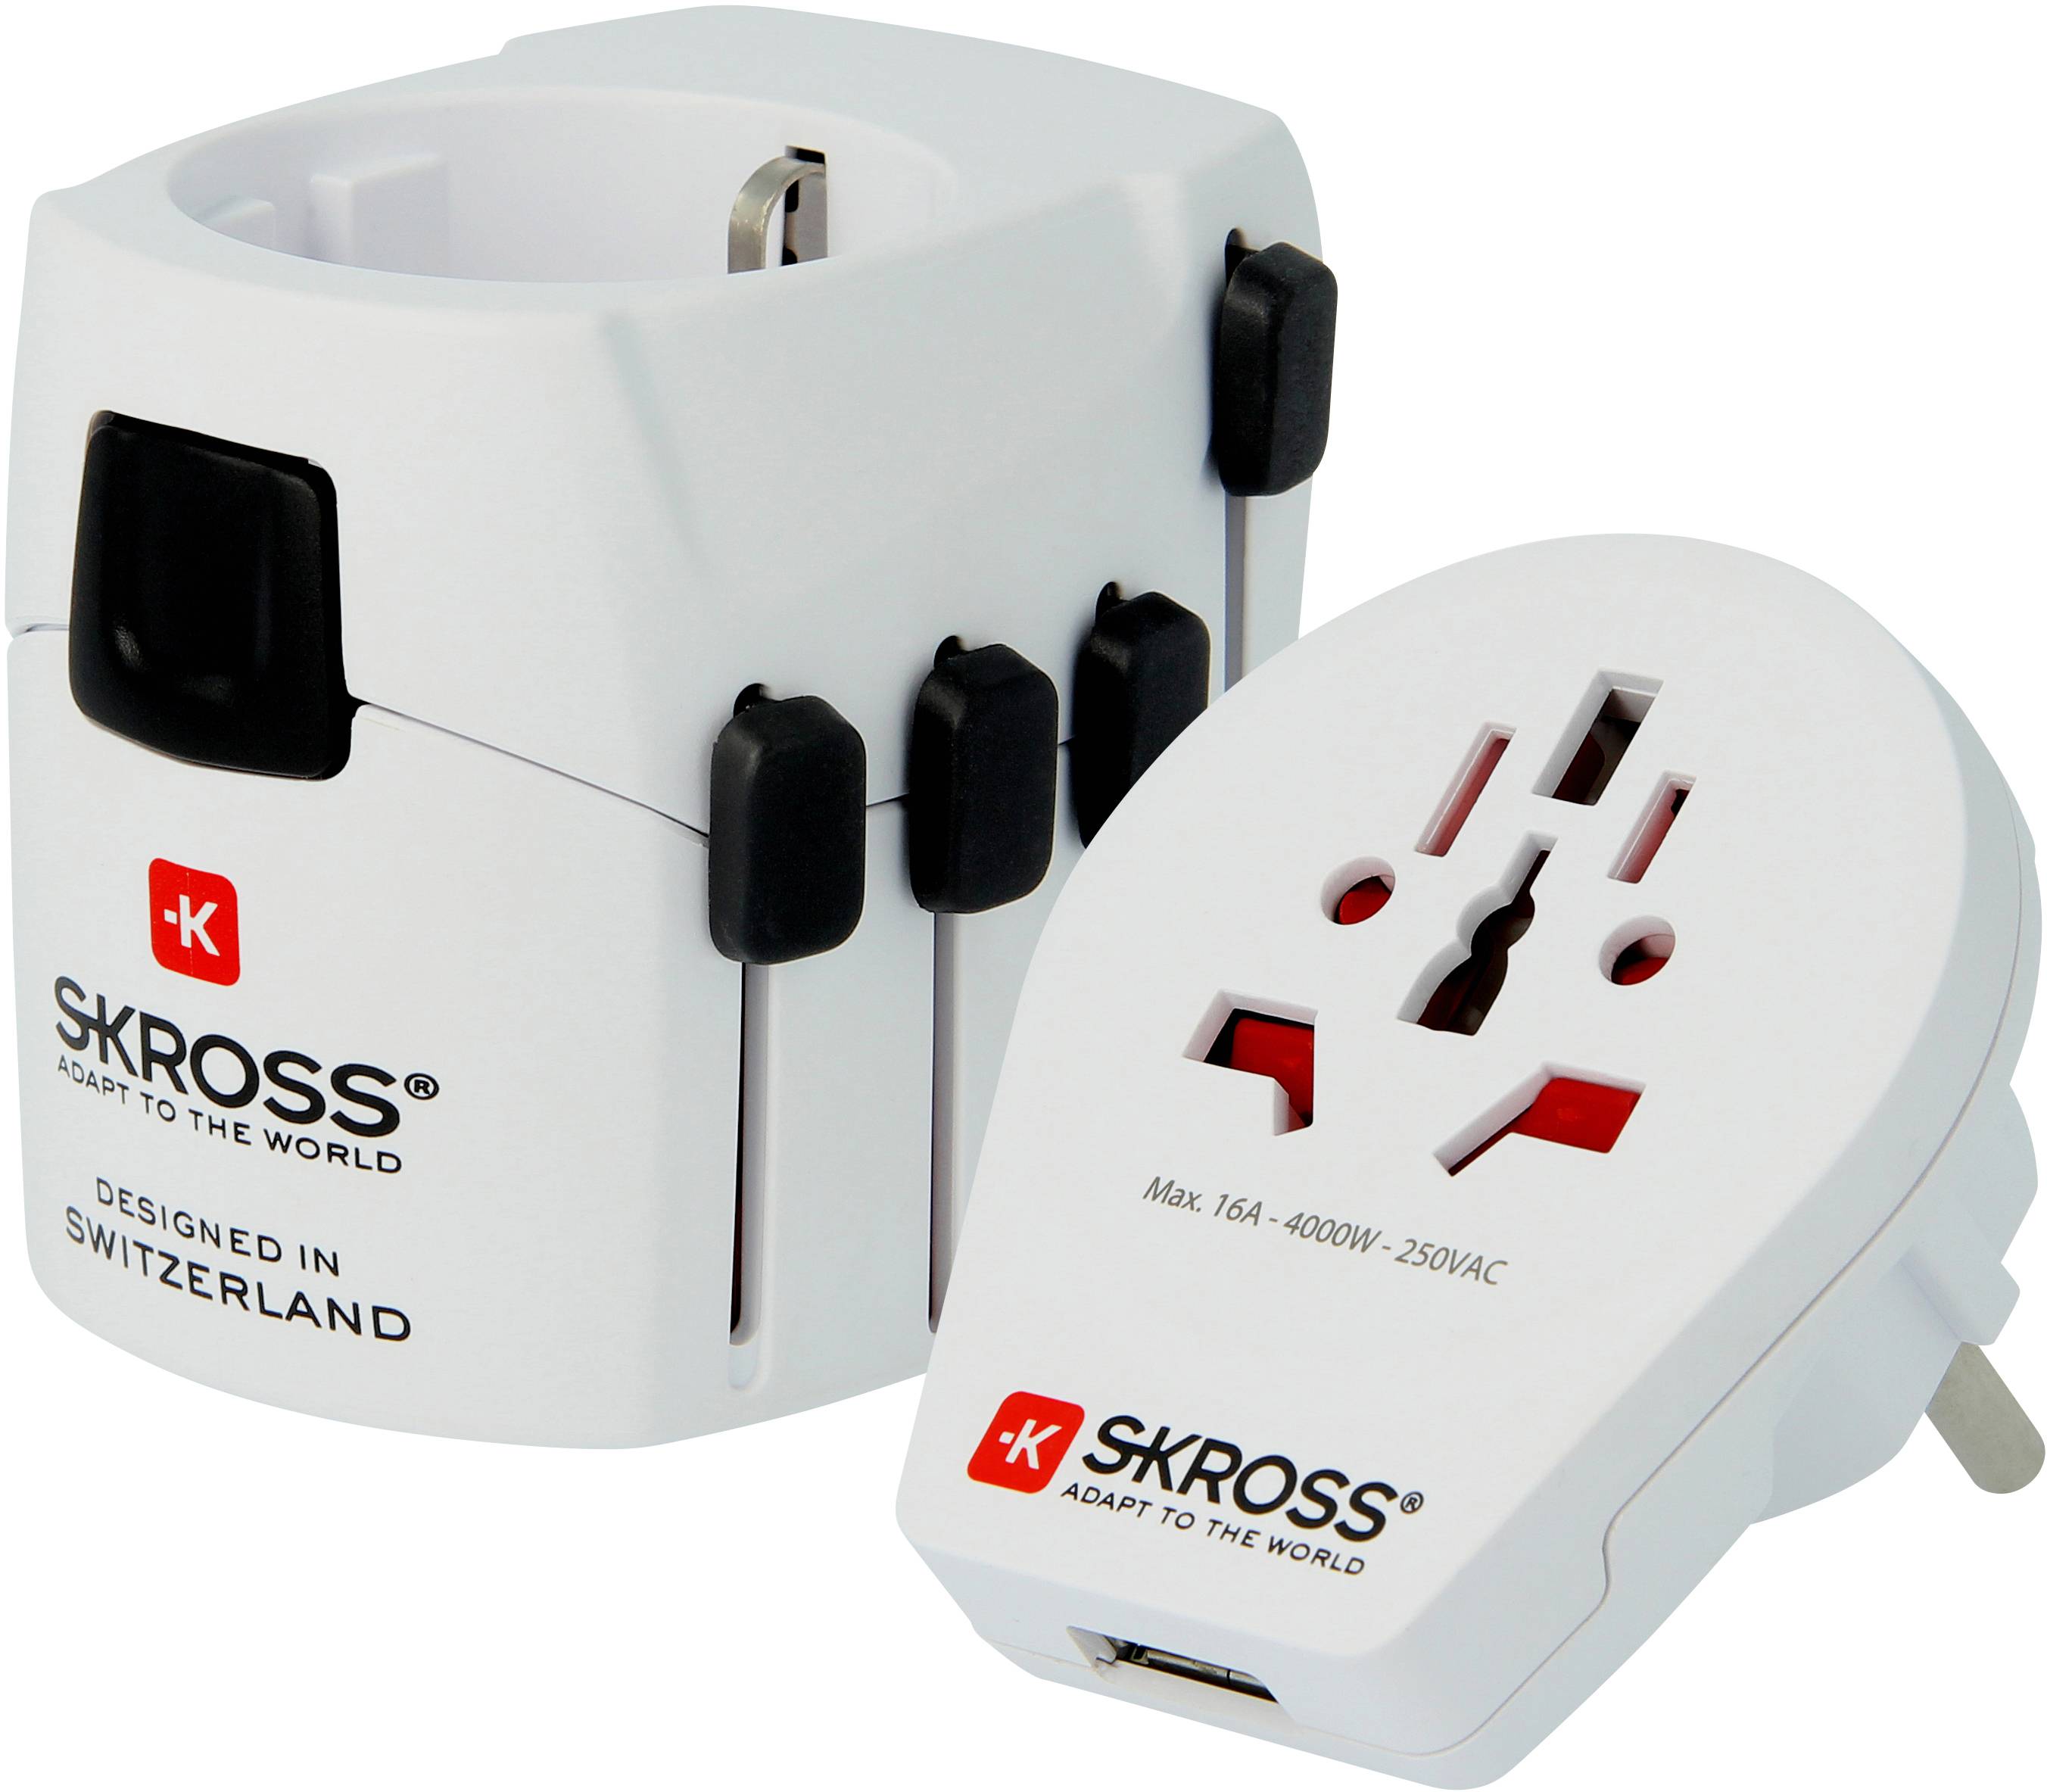 Genre Naar de waarheid robot Reisstekker 2-in-1 Wereld Pro USB SKROSS - Thuisplaza